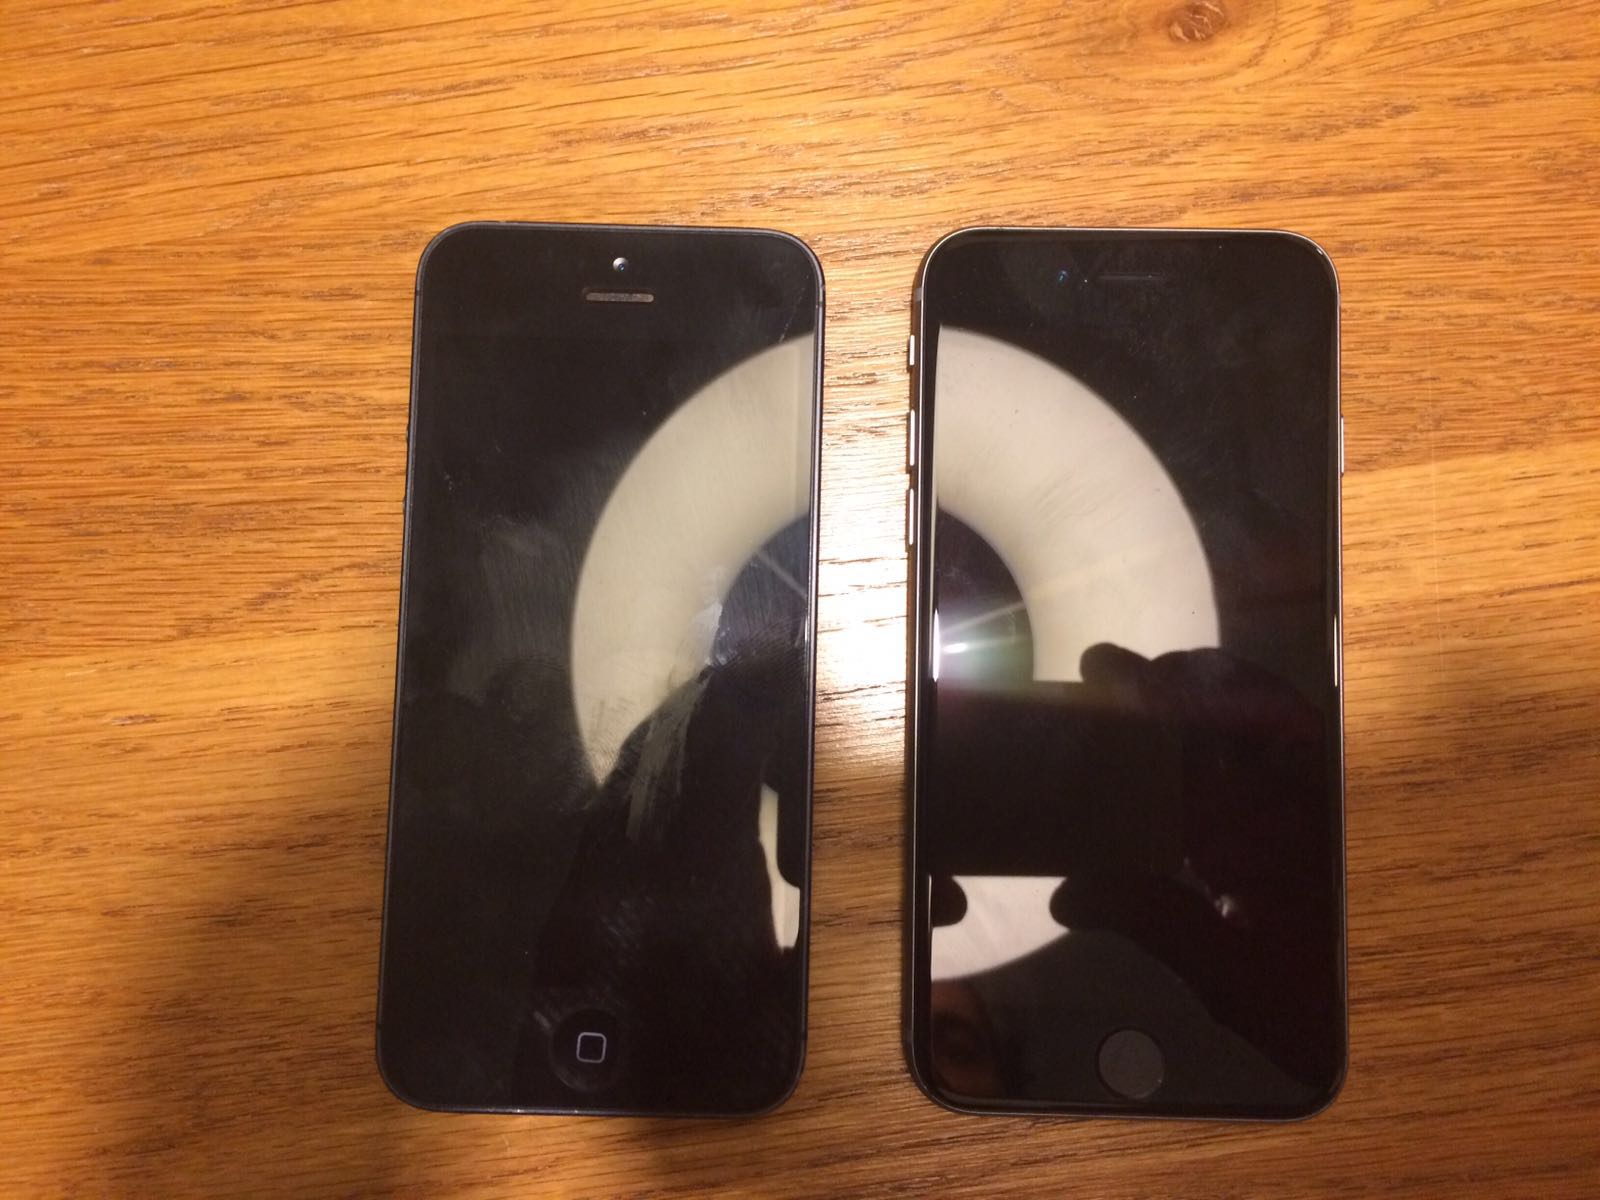 iPhone 5se görüntüleri sızdırıldı